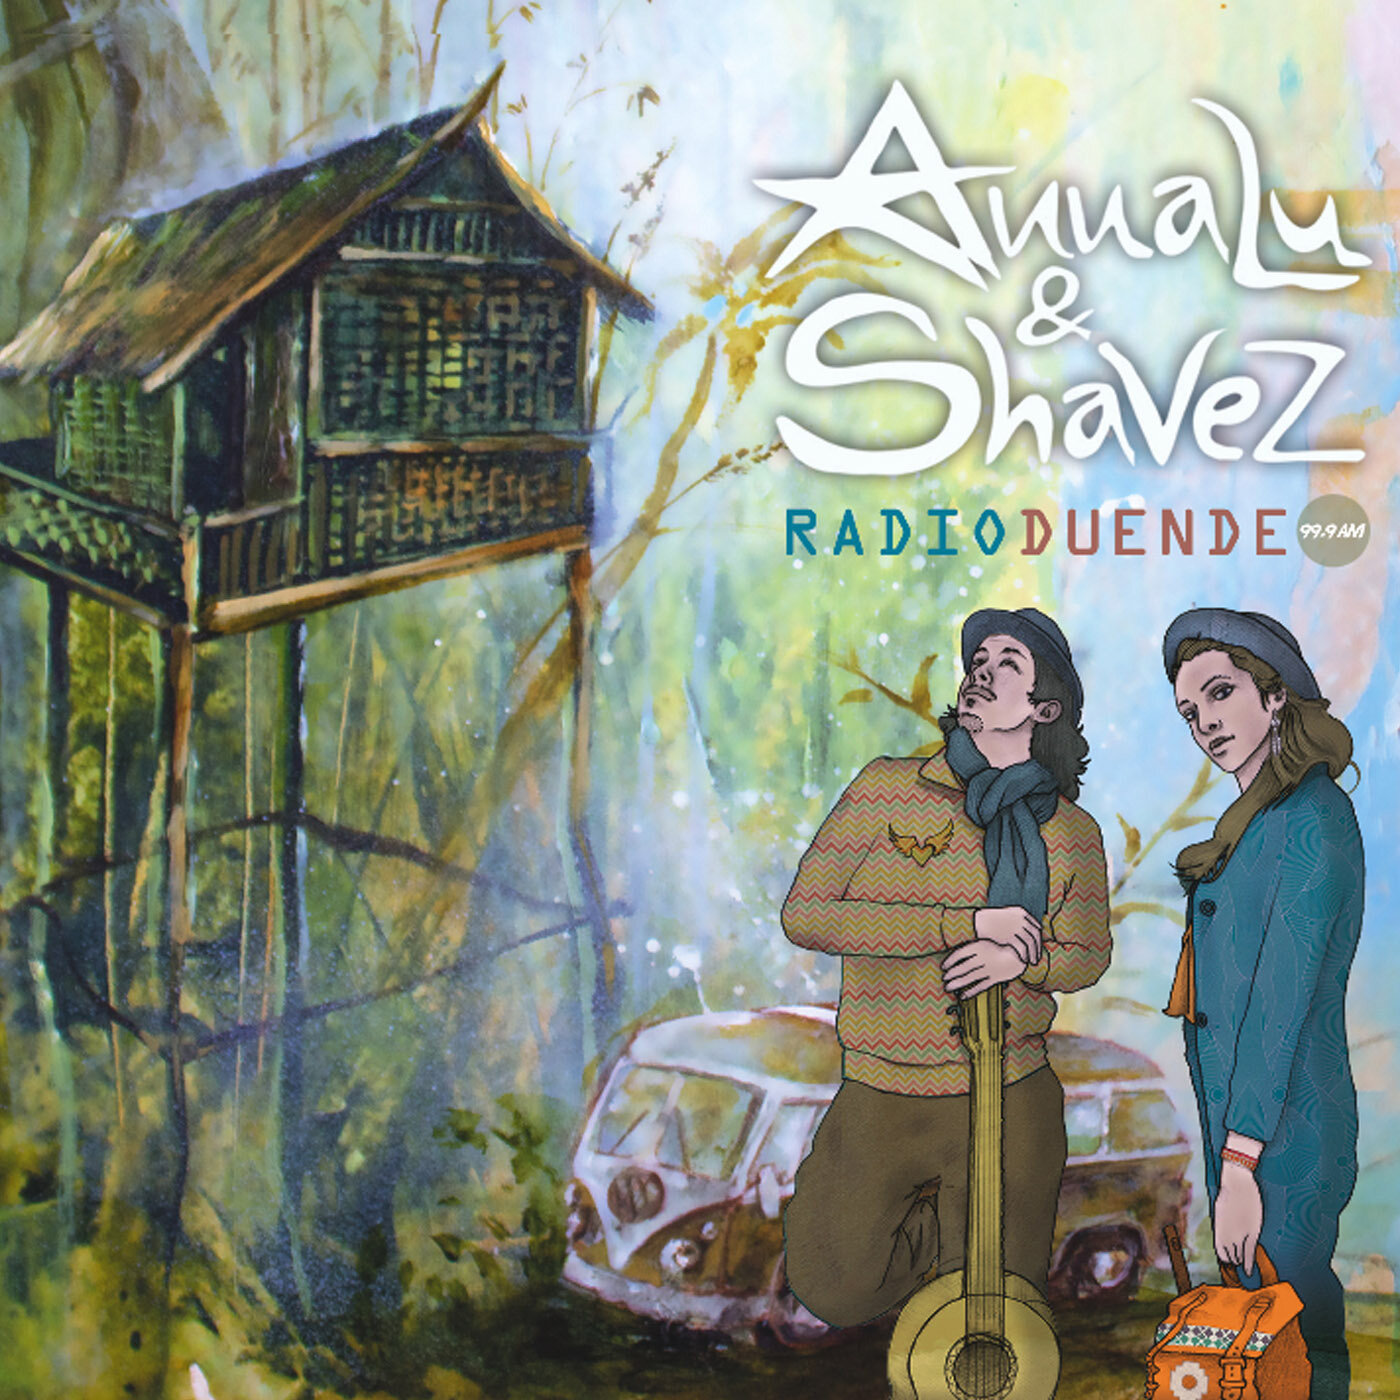 2016 - ANNALU &amp; SHAVEZ - Radio Duende (album)